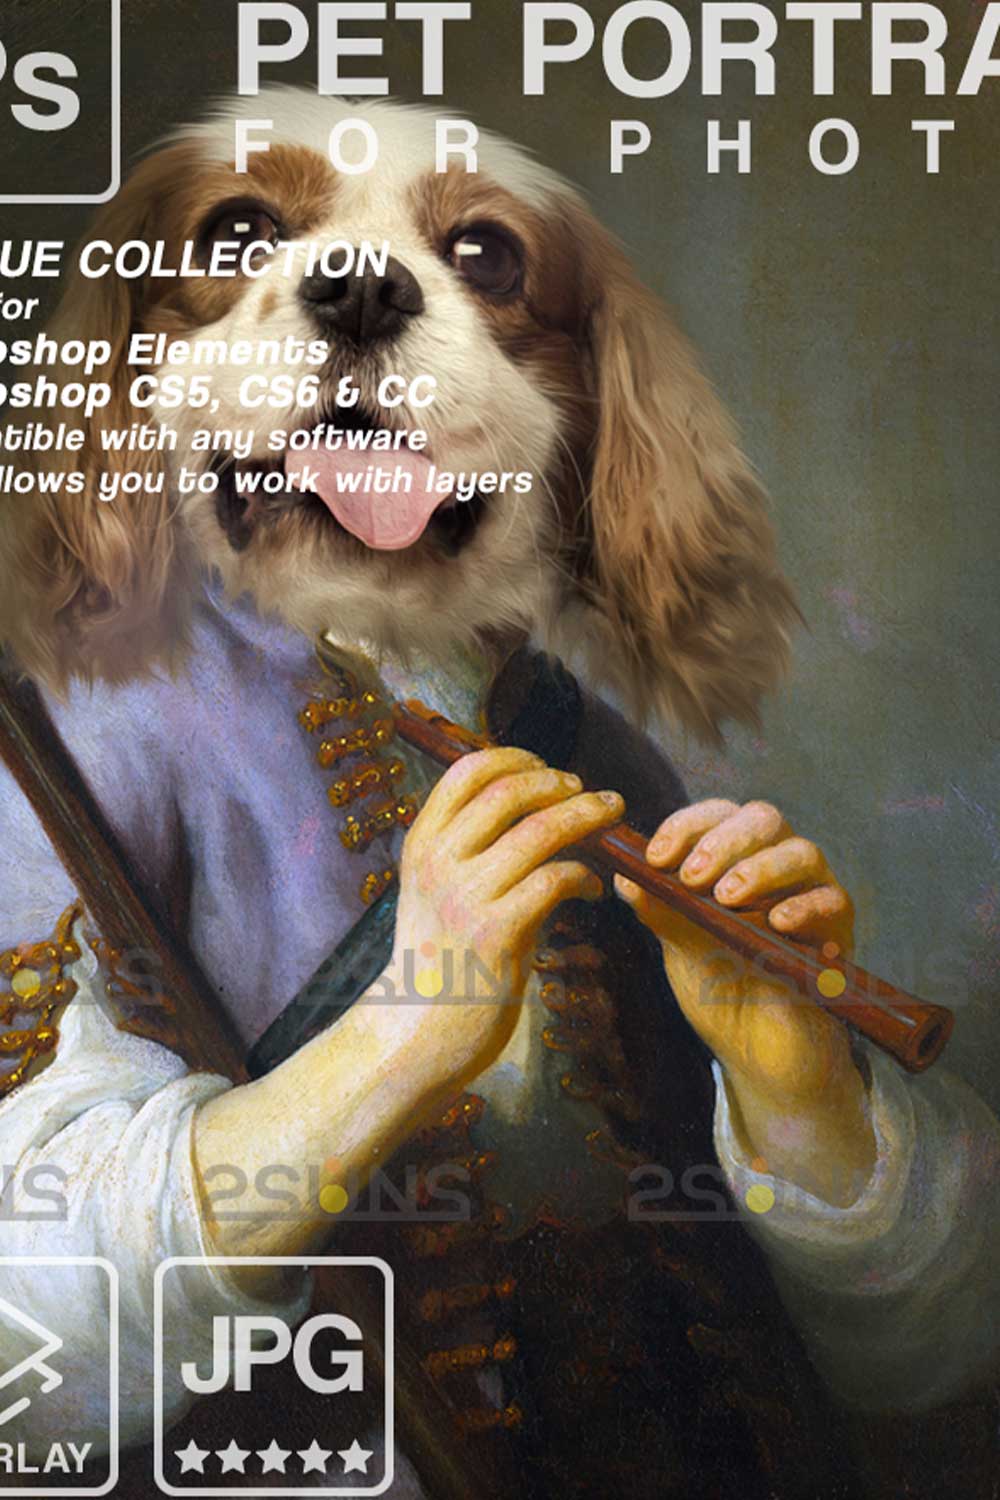 Oil Painting Royal Pet Portrait Templates Pinterest Image.